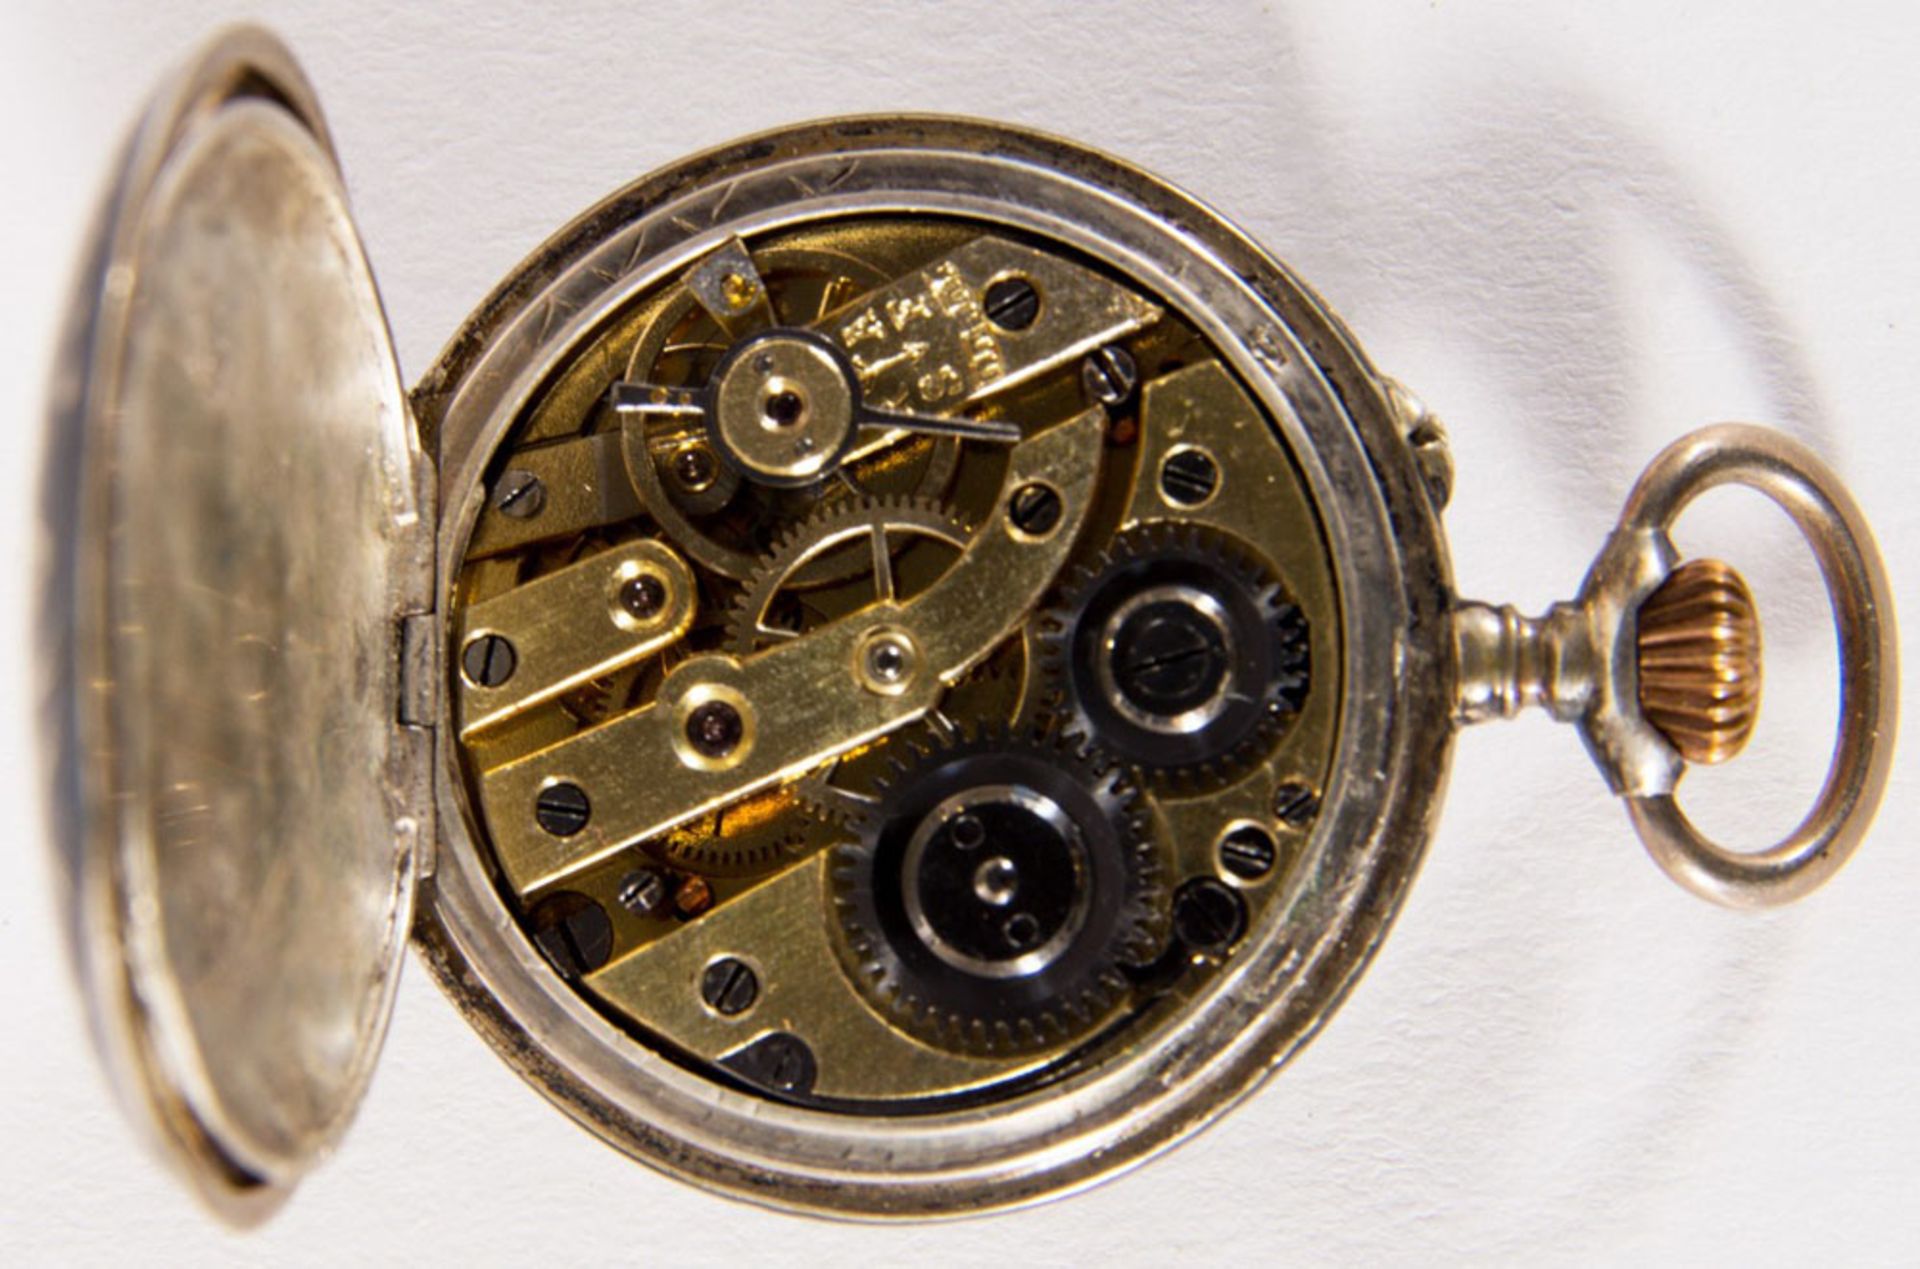 Antike Damentaschenuhr um 1900 in orig. Kartonage. Werk läuft an. Durchmesser ca 30mm. - Image 5 of 10